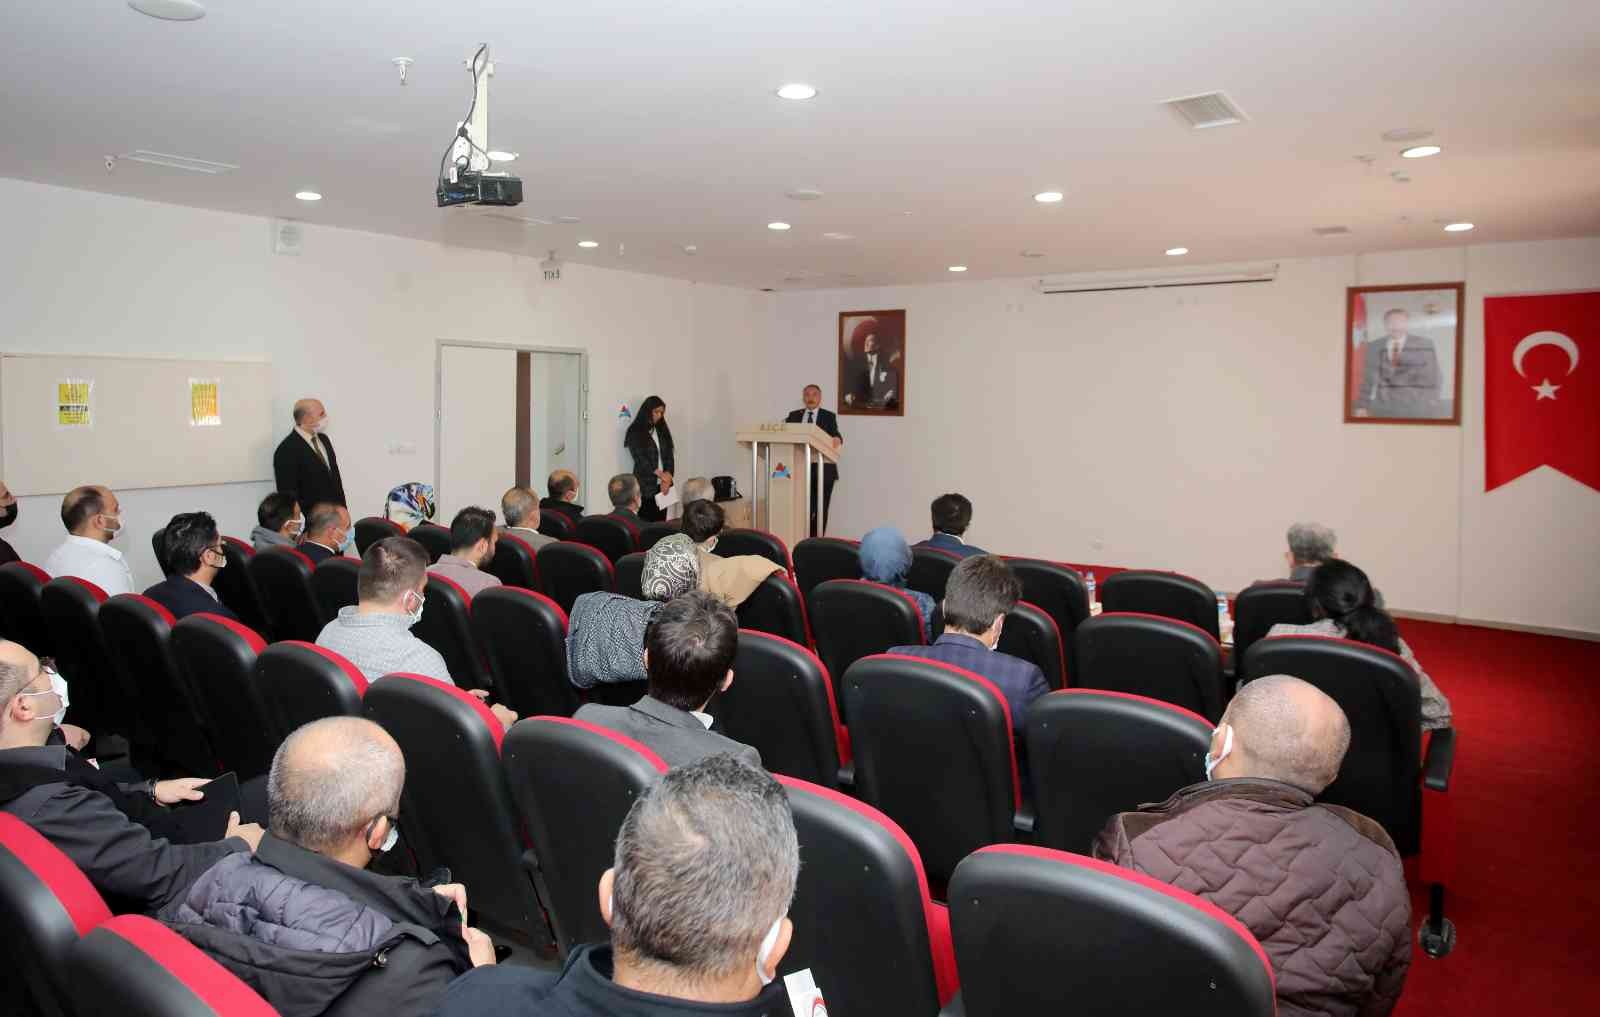 AİÇÜ Rektörü Prof. Dr. Karabulut, DAP İdaresi Başkanı Prof. Dr. Demirdöğen’i misafir etti #agri